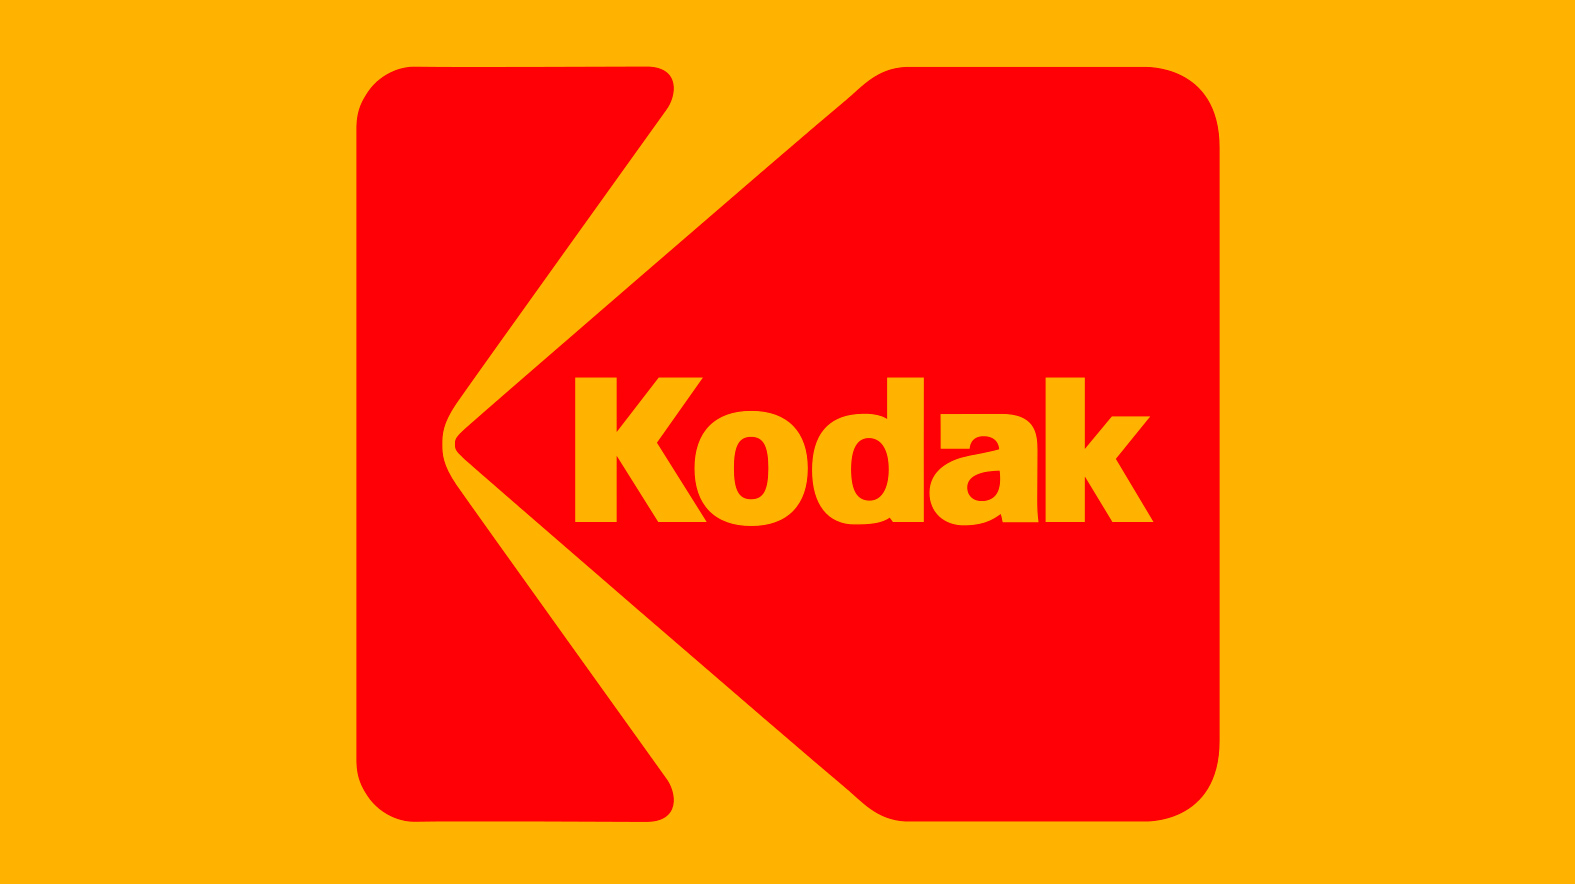 Kodak vai lançar smartphones, tablet e câmera conectada em 2015